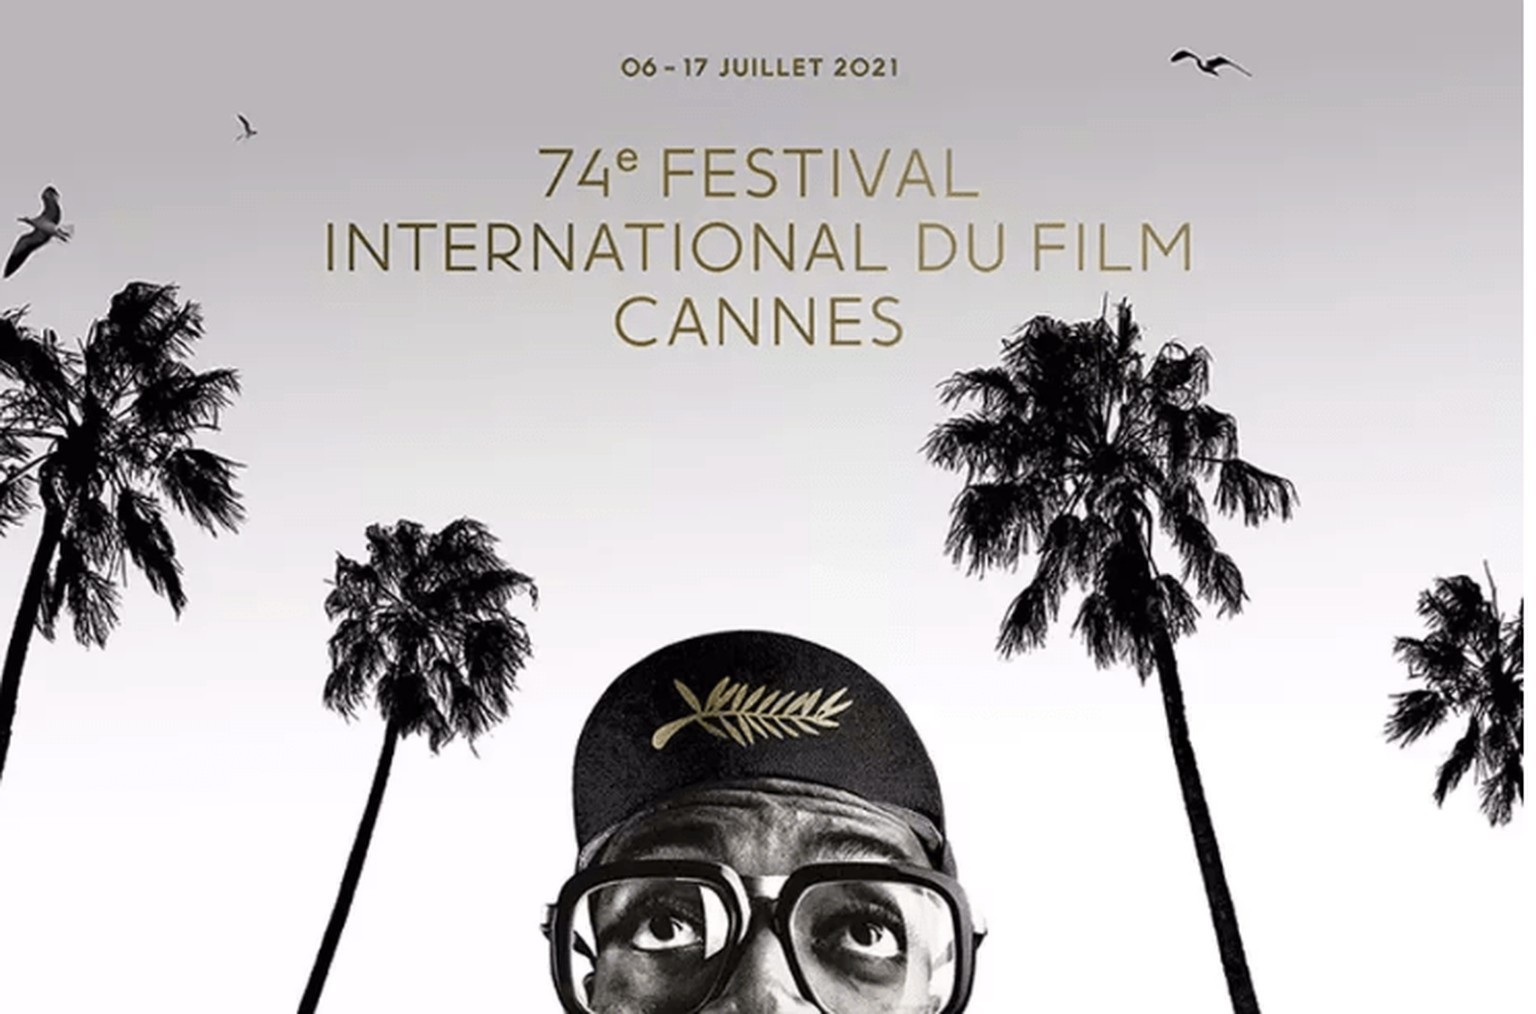 Cannes 2021, ça commence: lever de rideau surpeuplé et franco-français